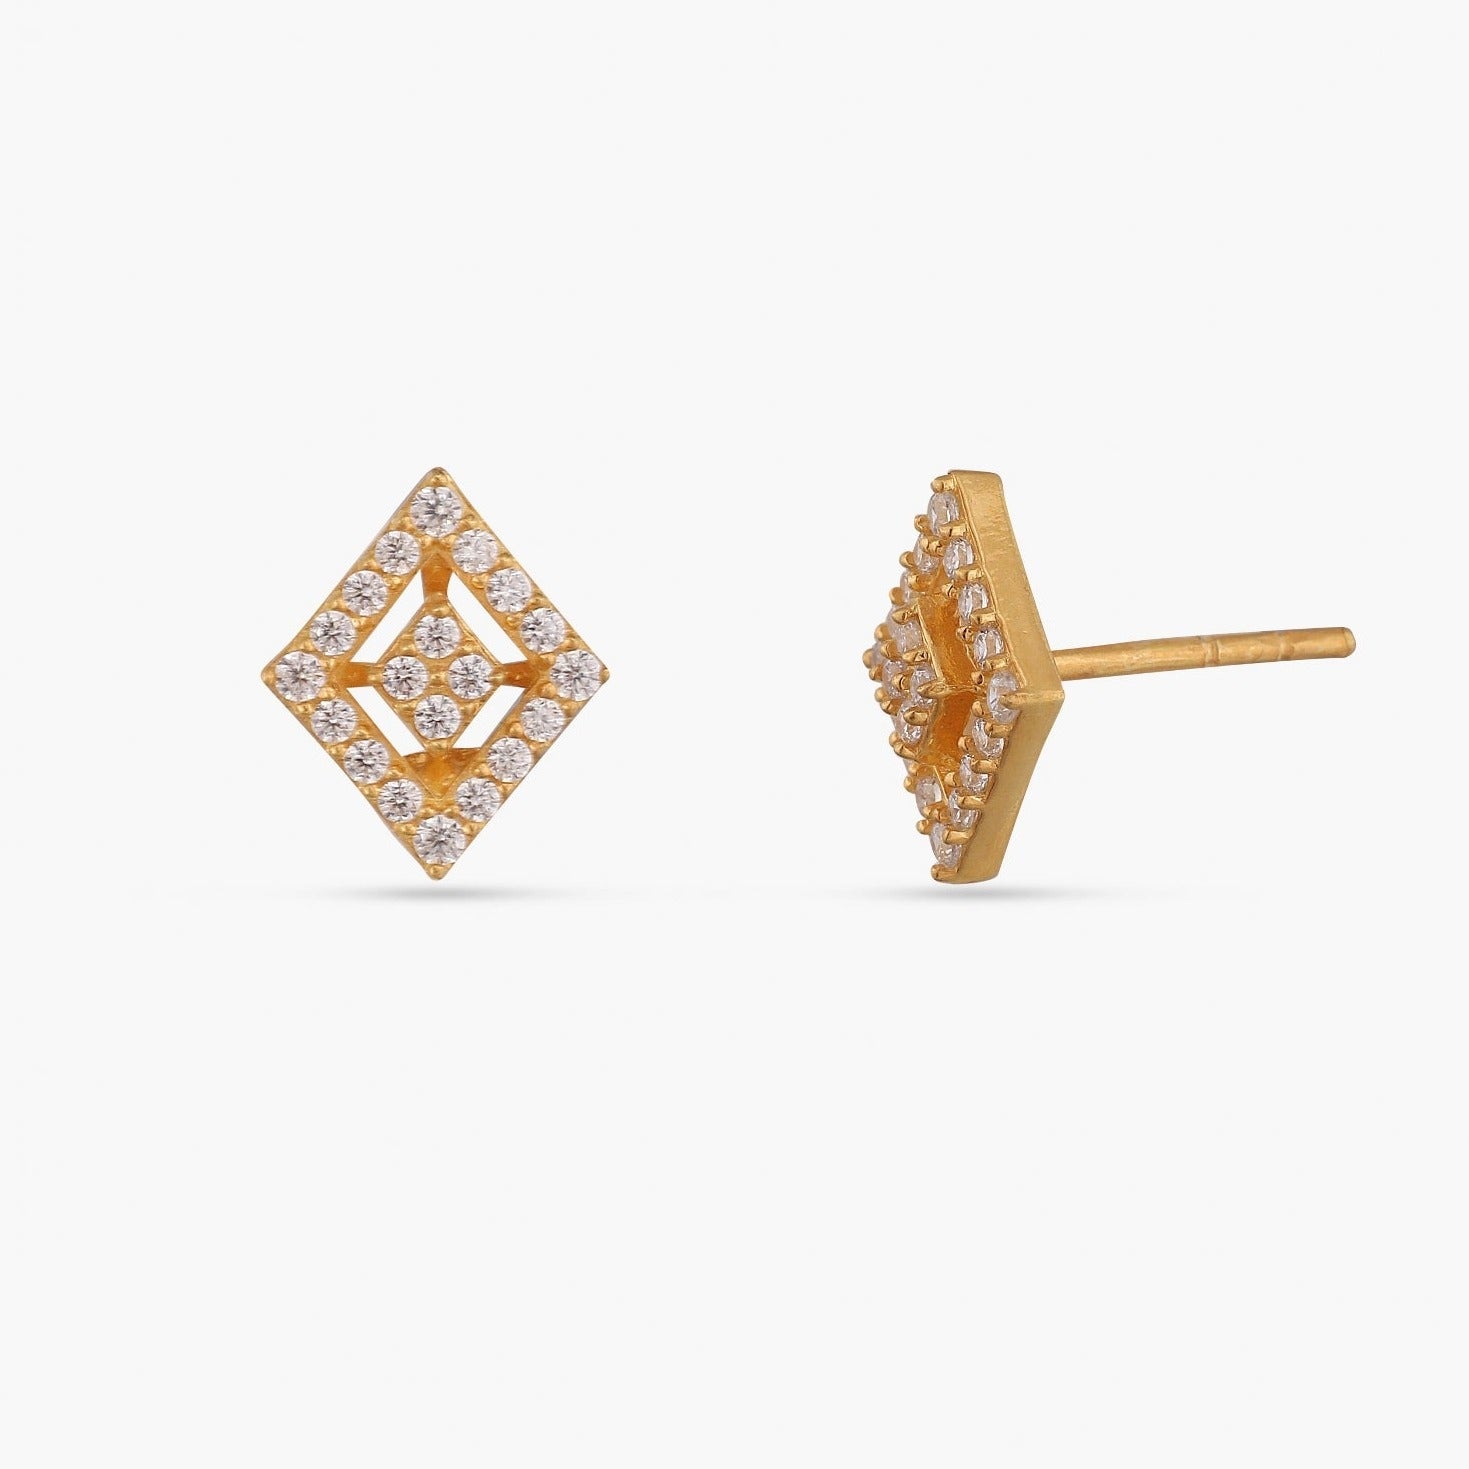 Shop Online Diamond Earrings | Bhavingems